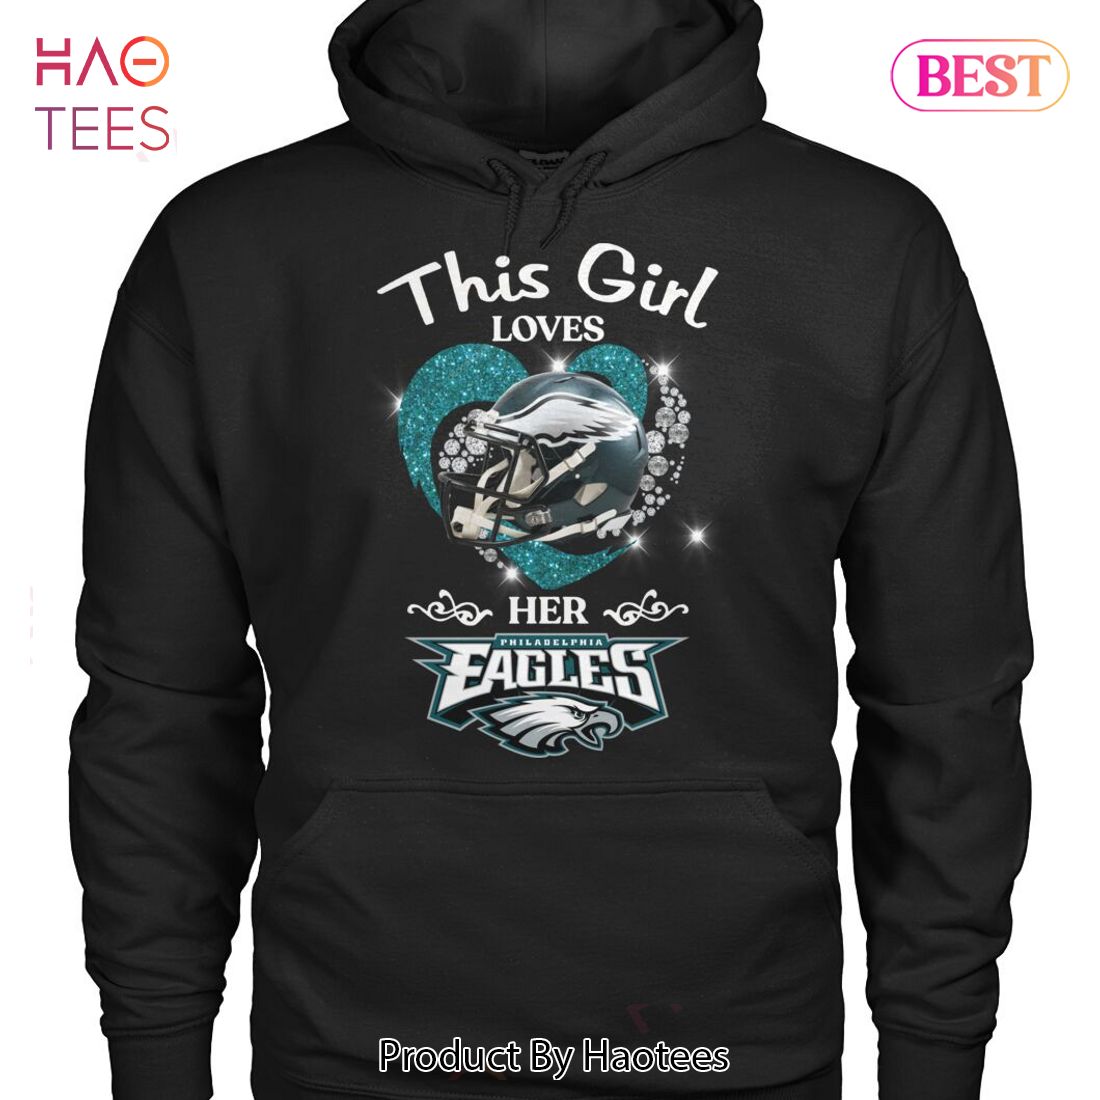 Philadelphia Eagles This girl loves her eagles shirt - Guineashirt Premium  ™ LLC